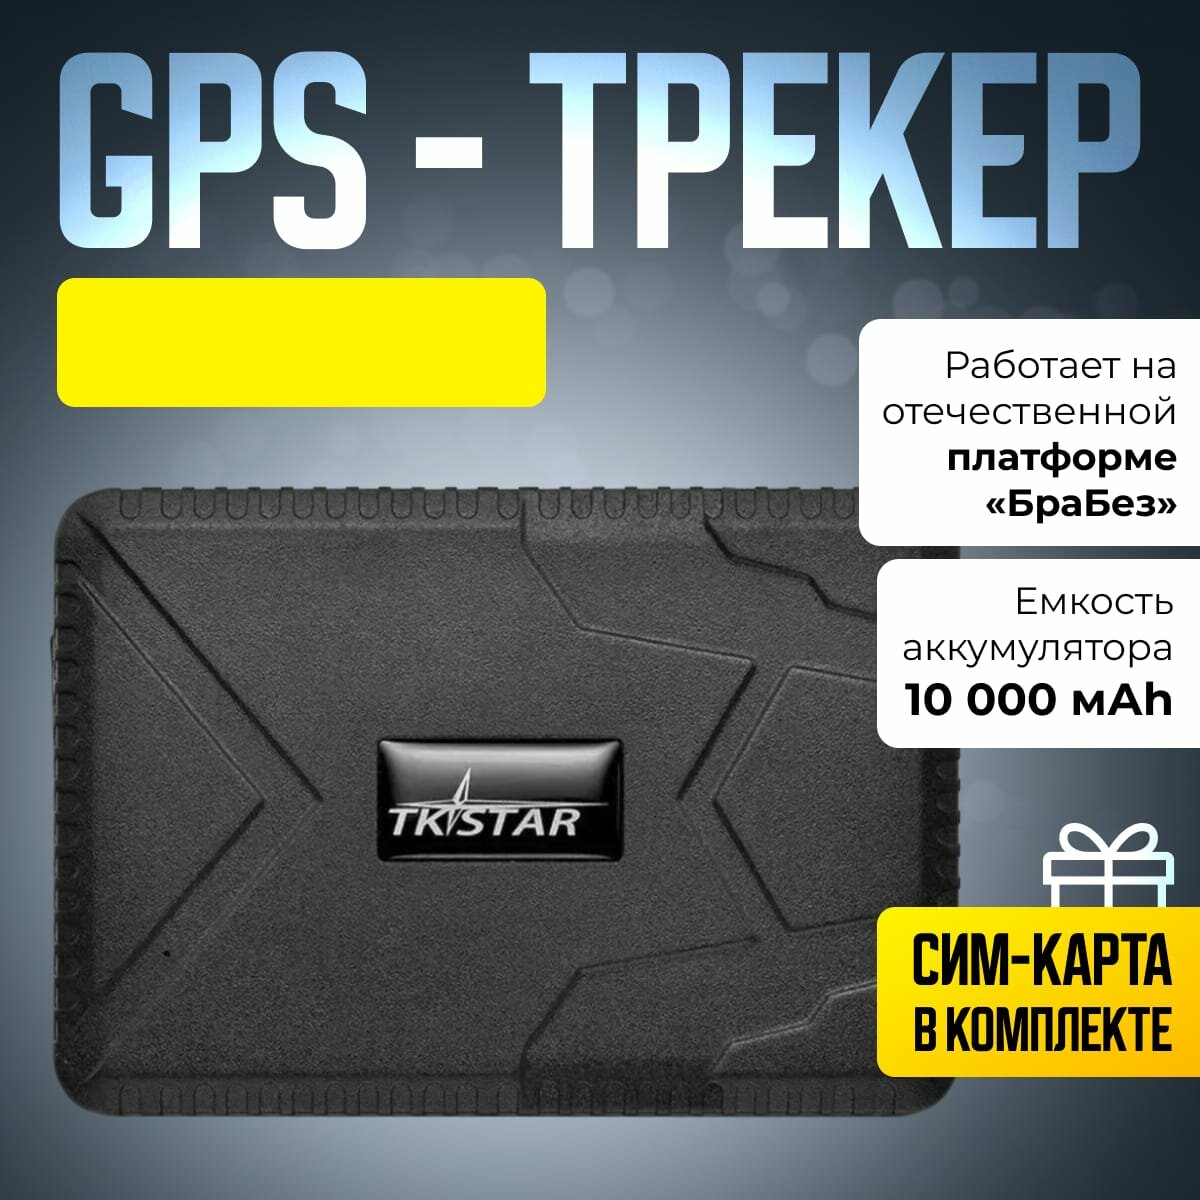 GPS-трекер брабез TK915 с сим-картой "ГЛОНАСС" ПСС "Браслет безопасности"